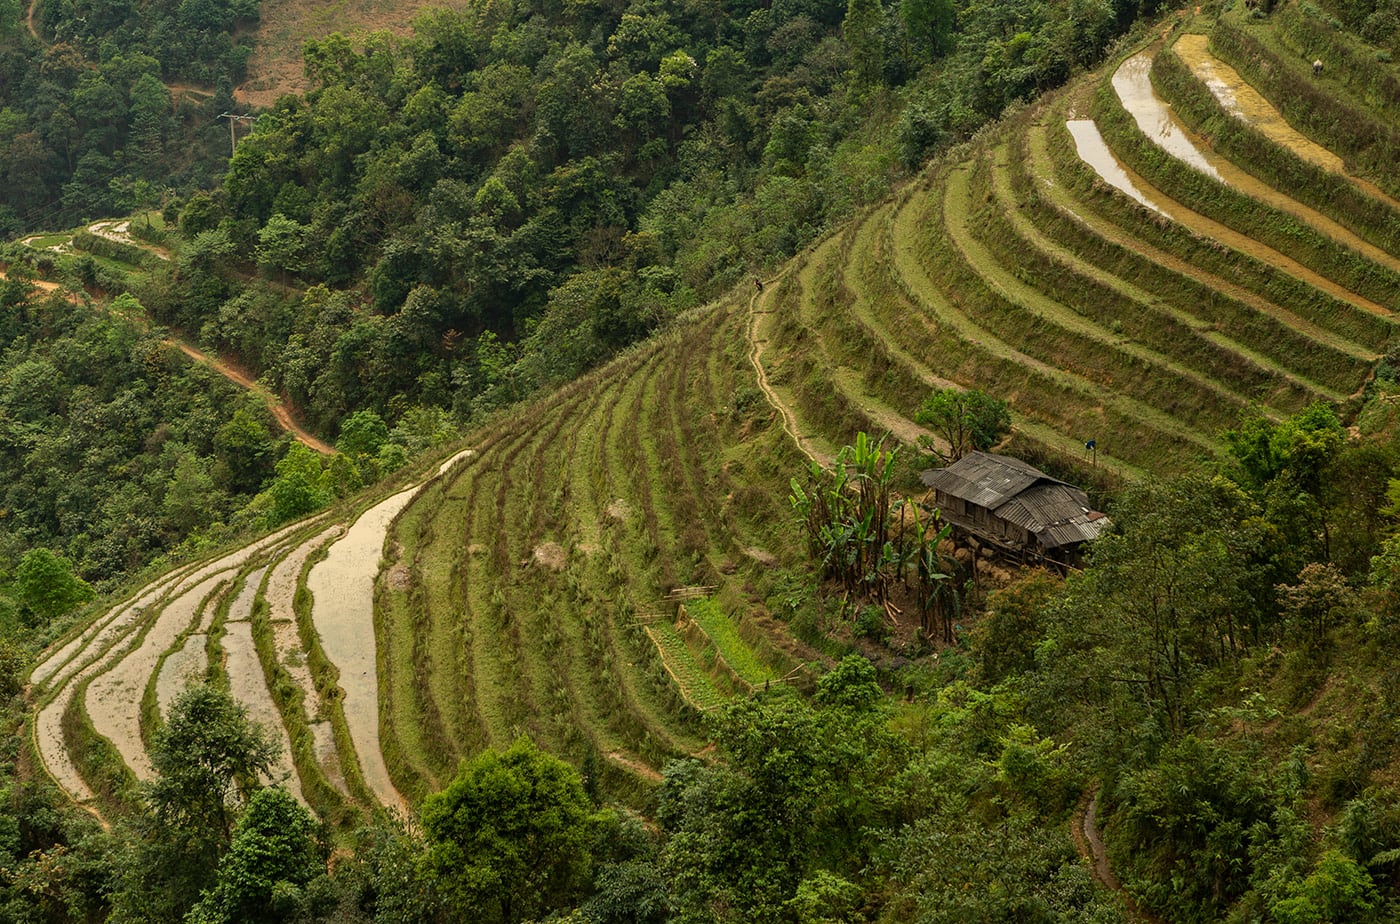 Rice Fields in Vietnam